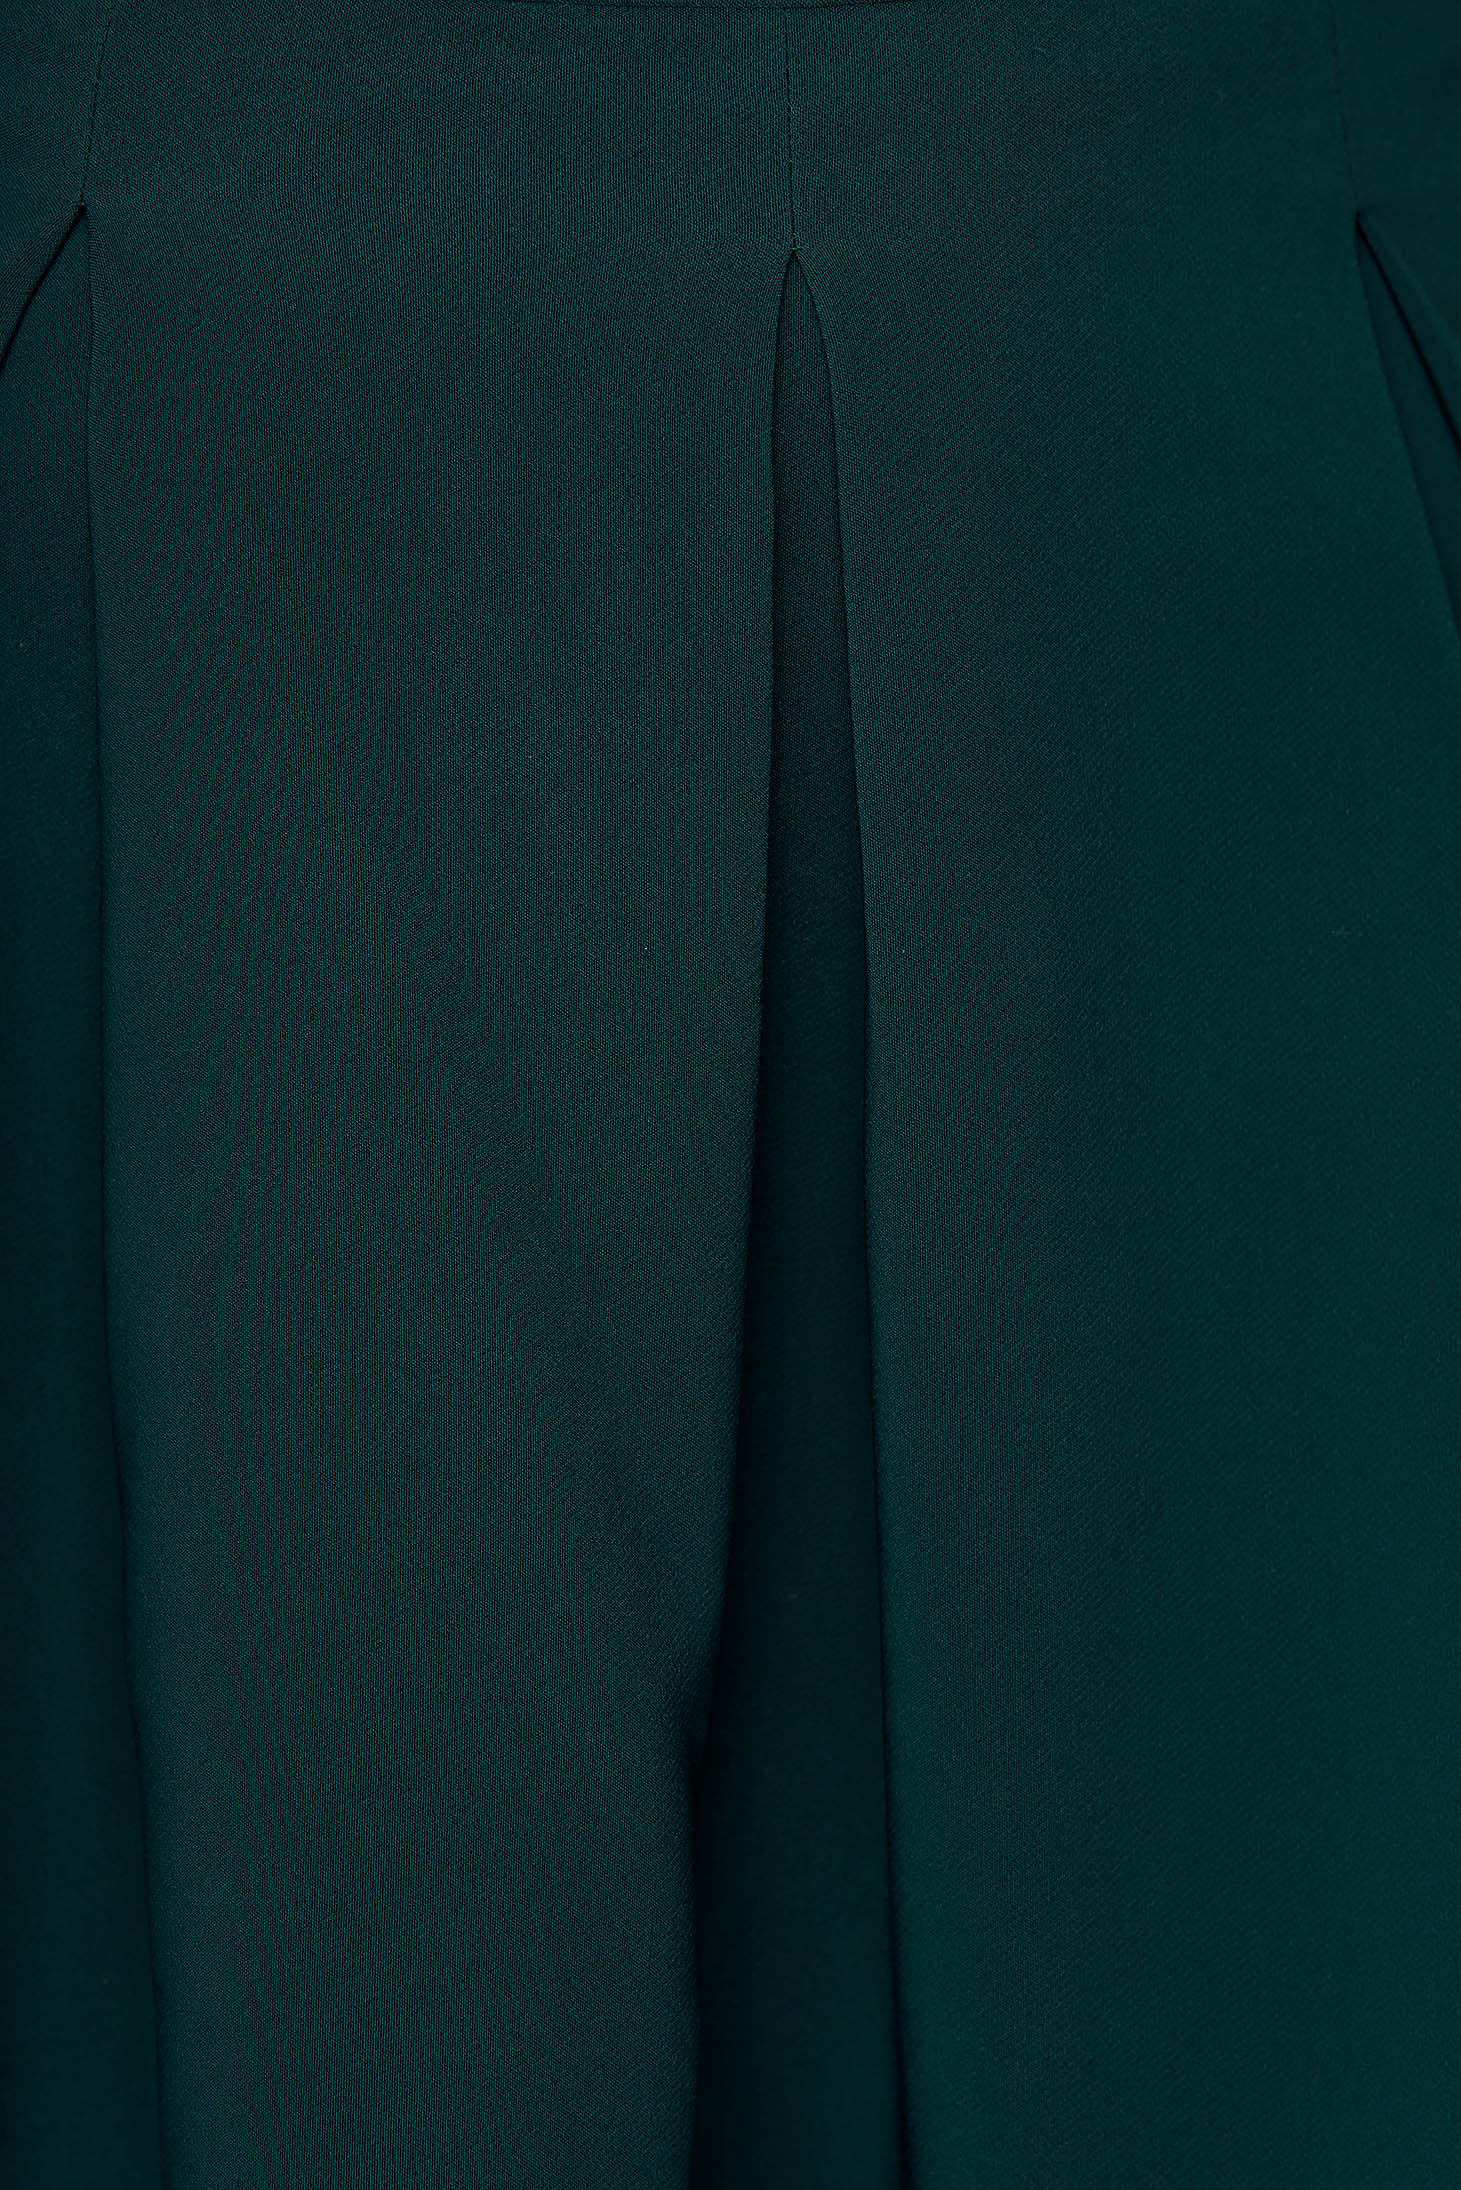 Darkgreen casual cloche skirt slightly elastic fabric medium waist 5 - StarShinerS.com